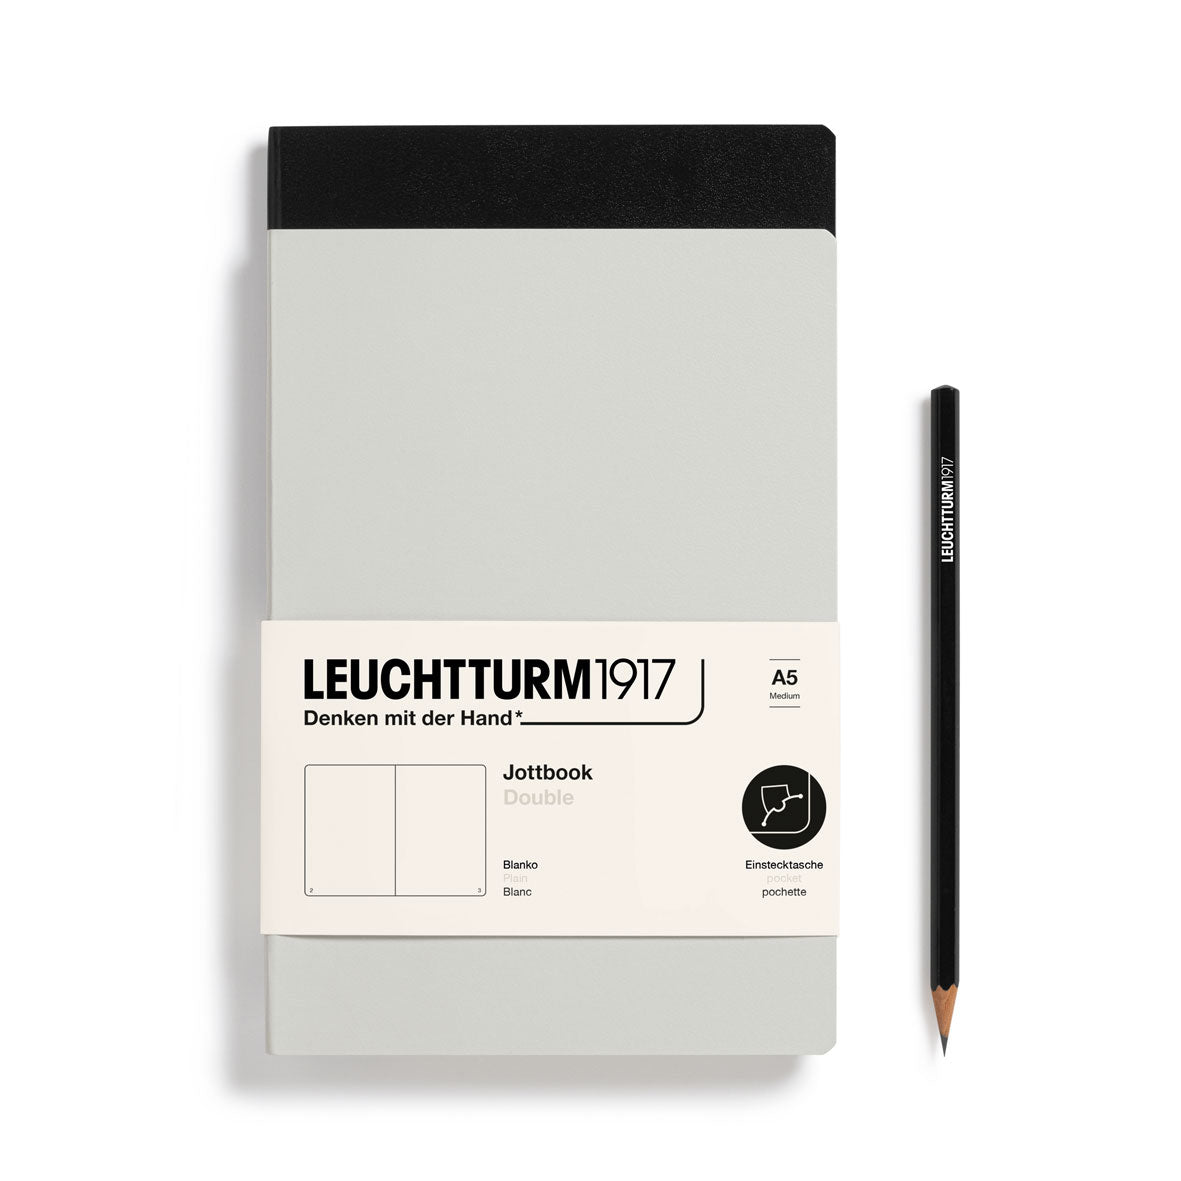 Jottbook Double - A5 - Uni - Light Grey/Noir - 4004117633119